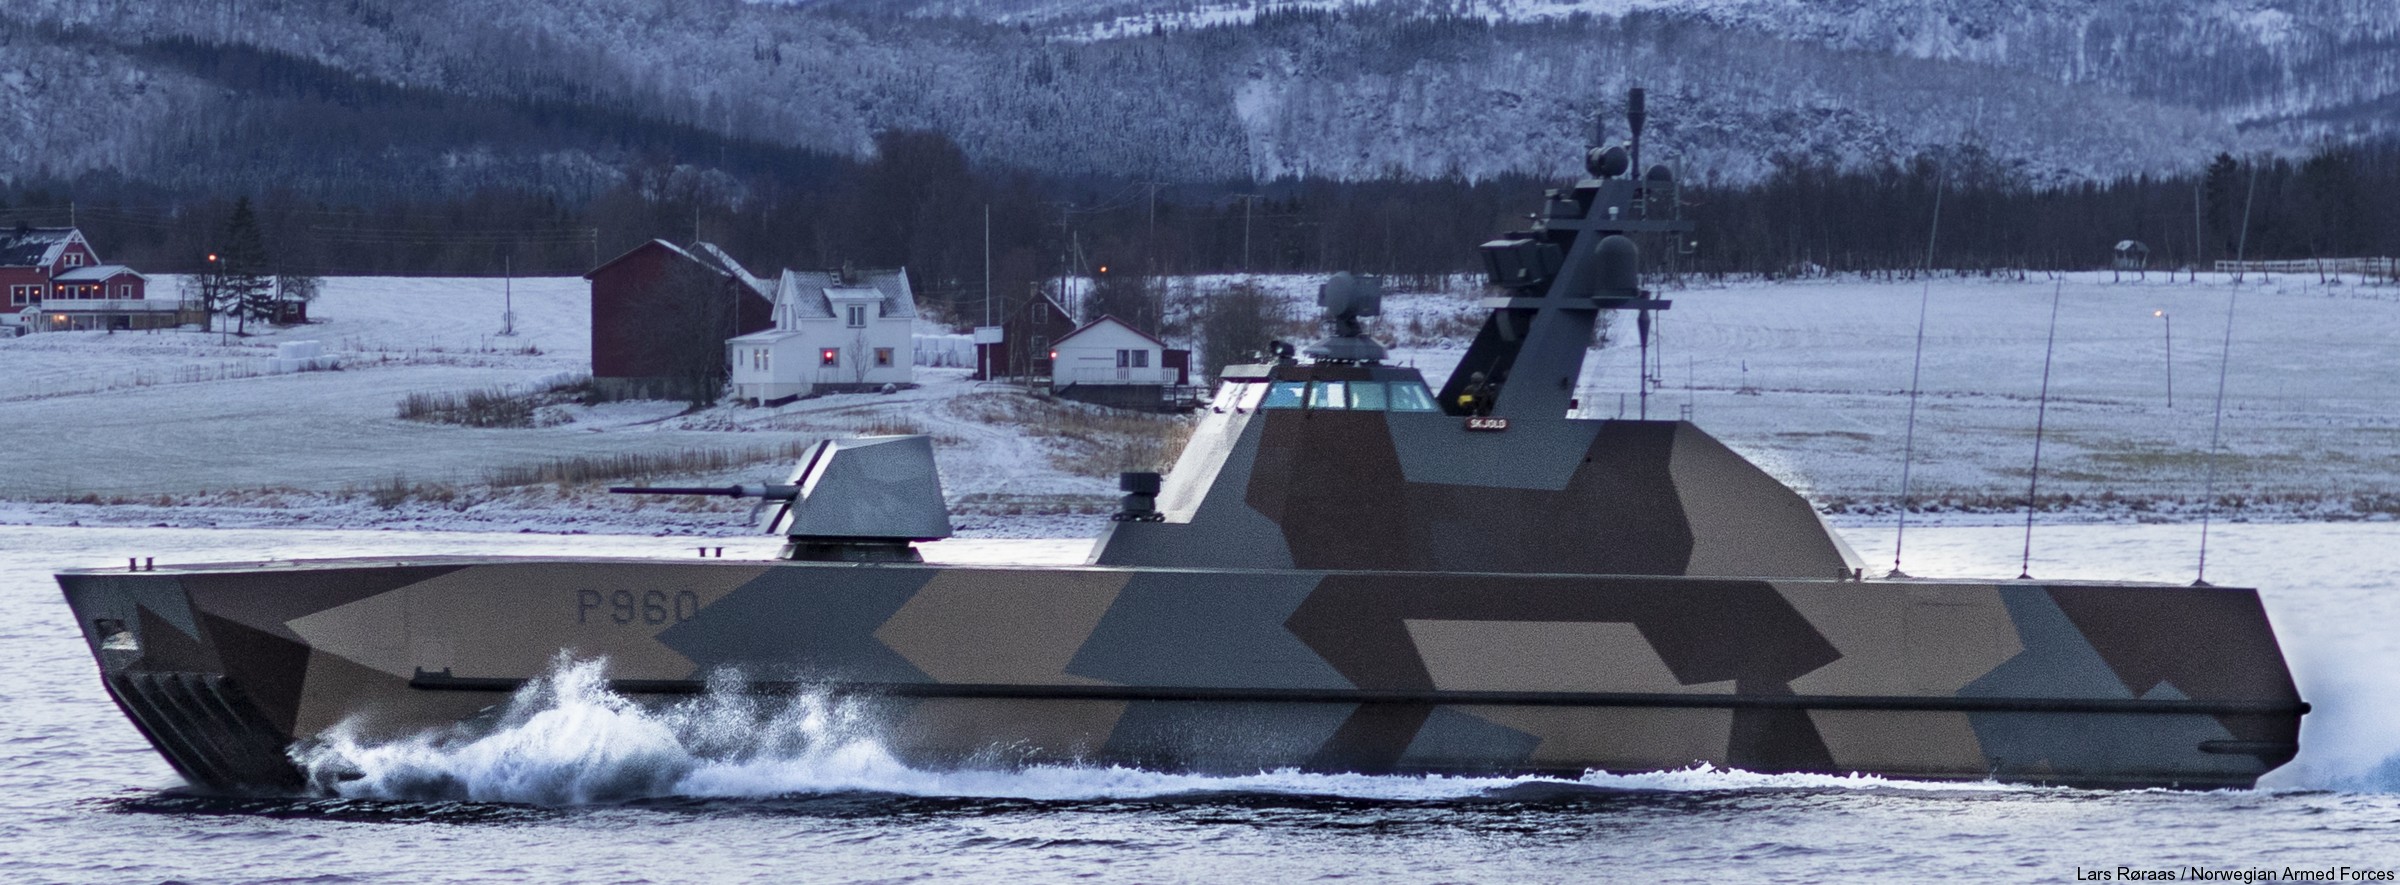 p-960 skjold hnoms knm corvette royal norwegian navy sjoforsvaret 11